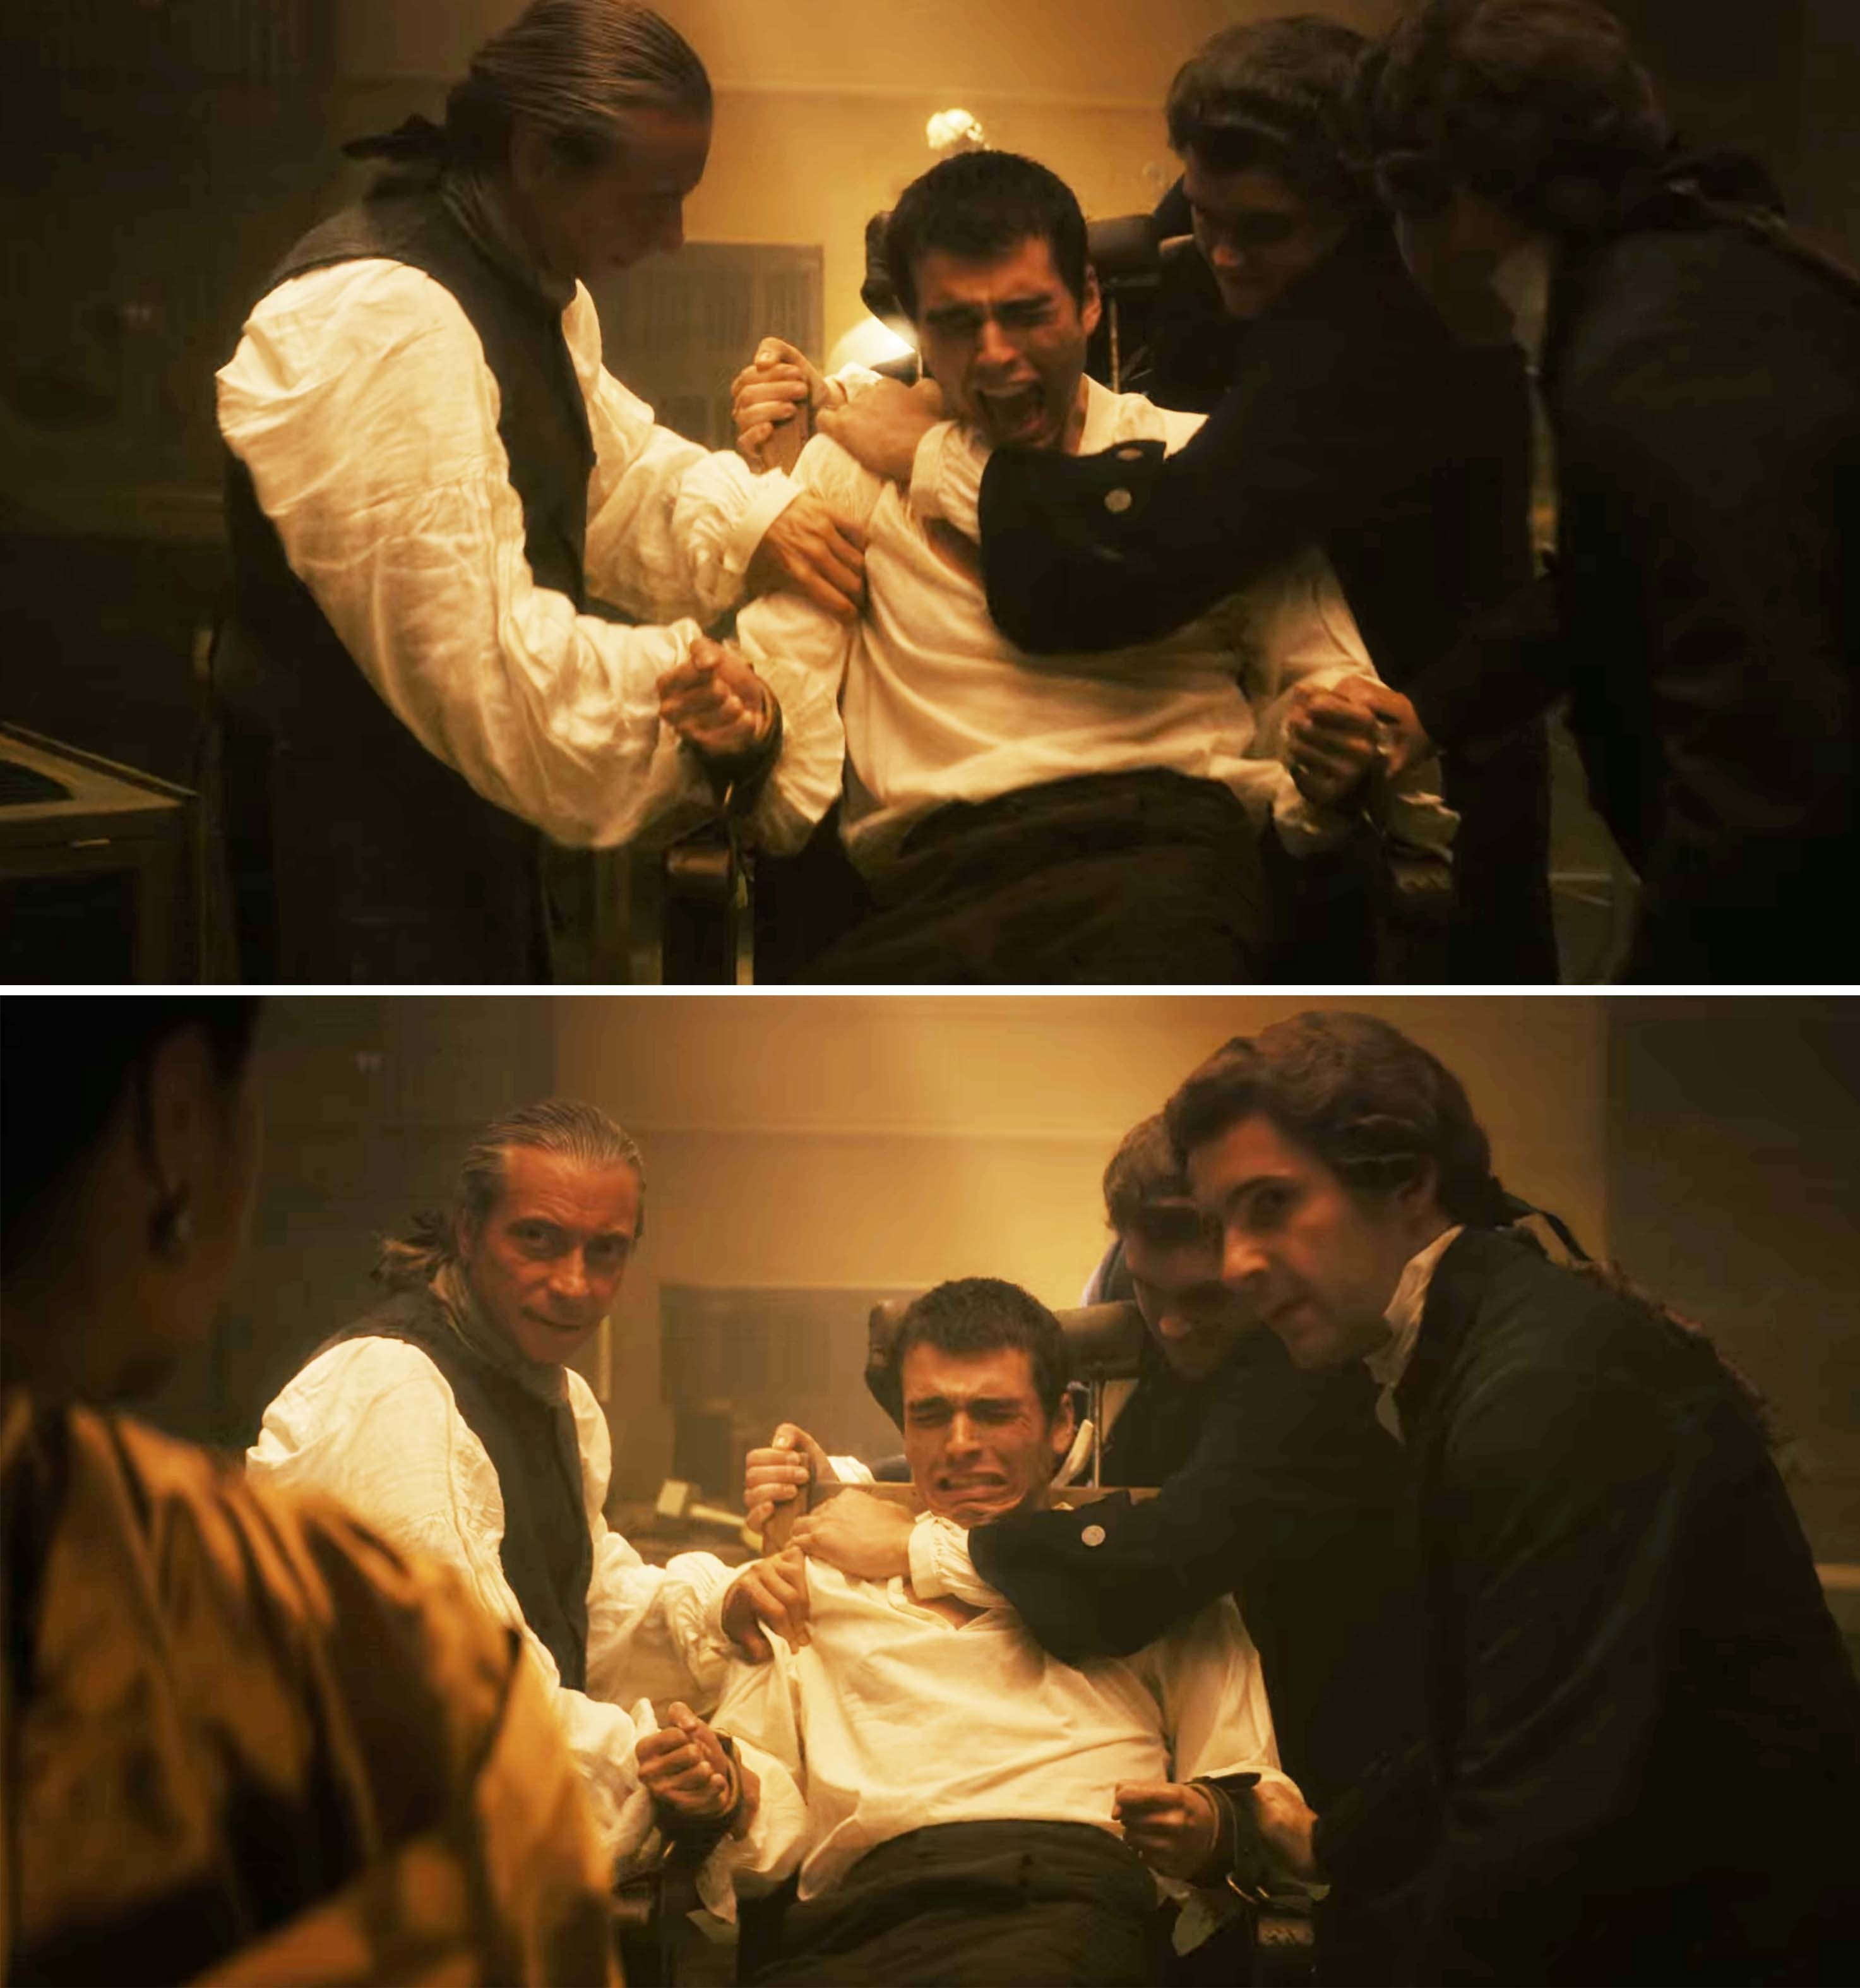 george behing held down by a group of men